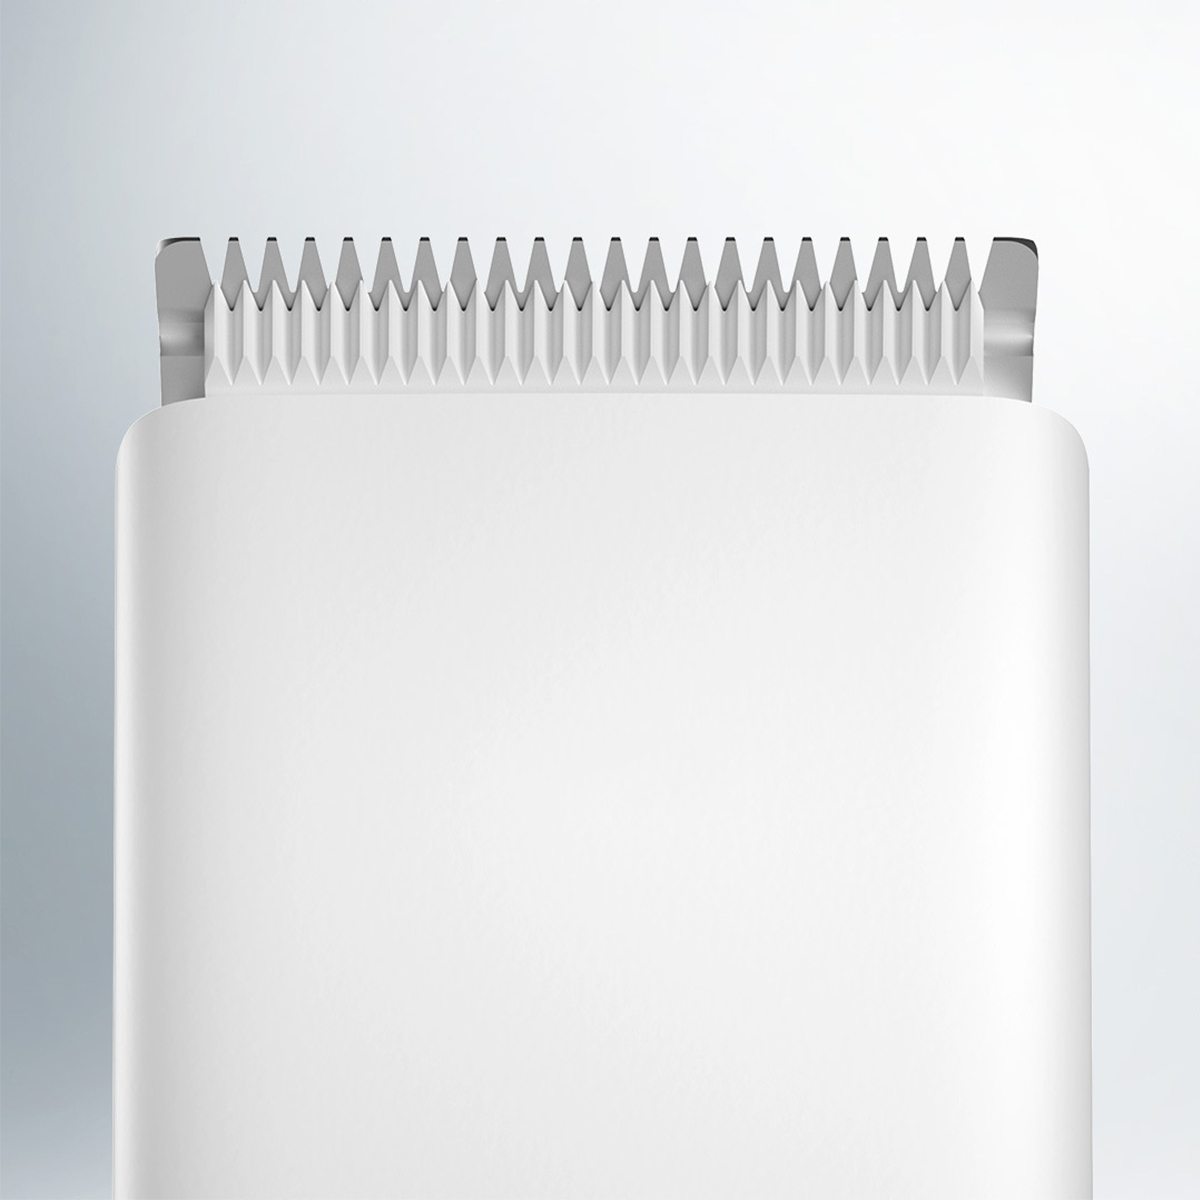 BRIGHTAKE Elektrische Haarschneidemaschine Elektrische Haarschneidemaschine Haarglätter Weiß Geräuscharm